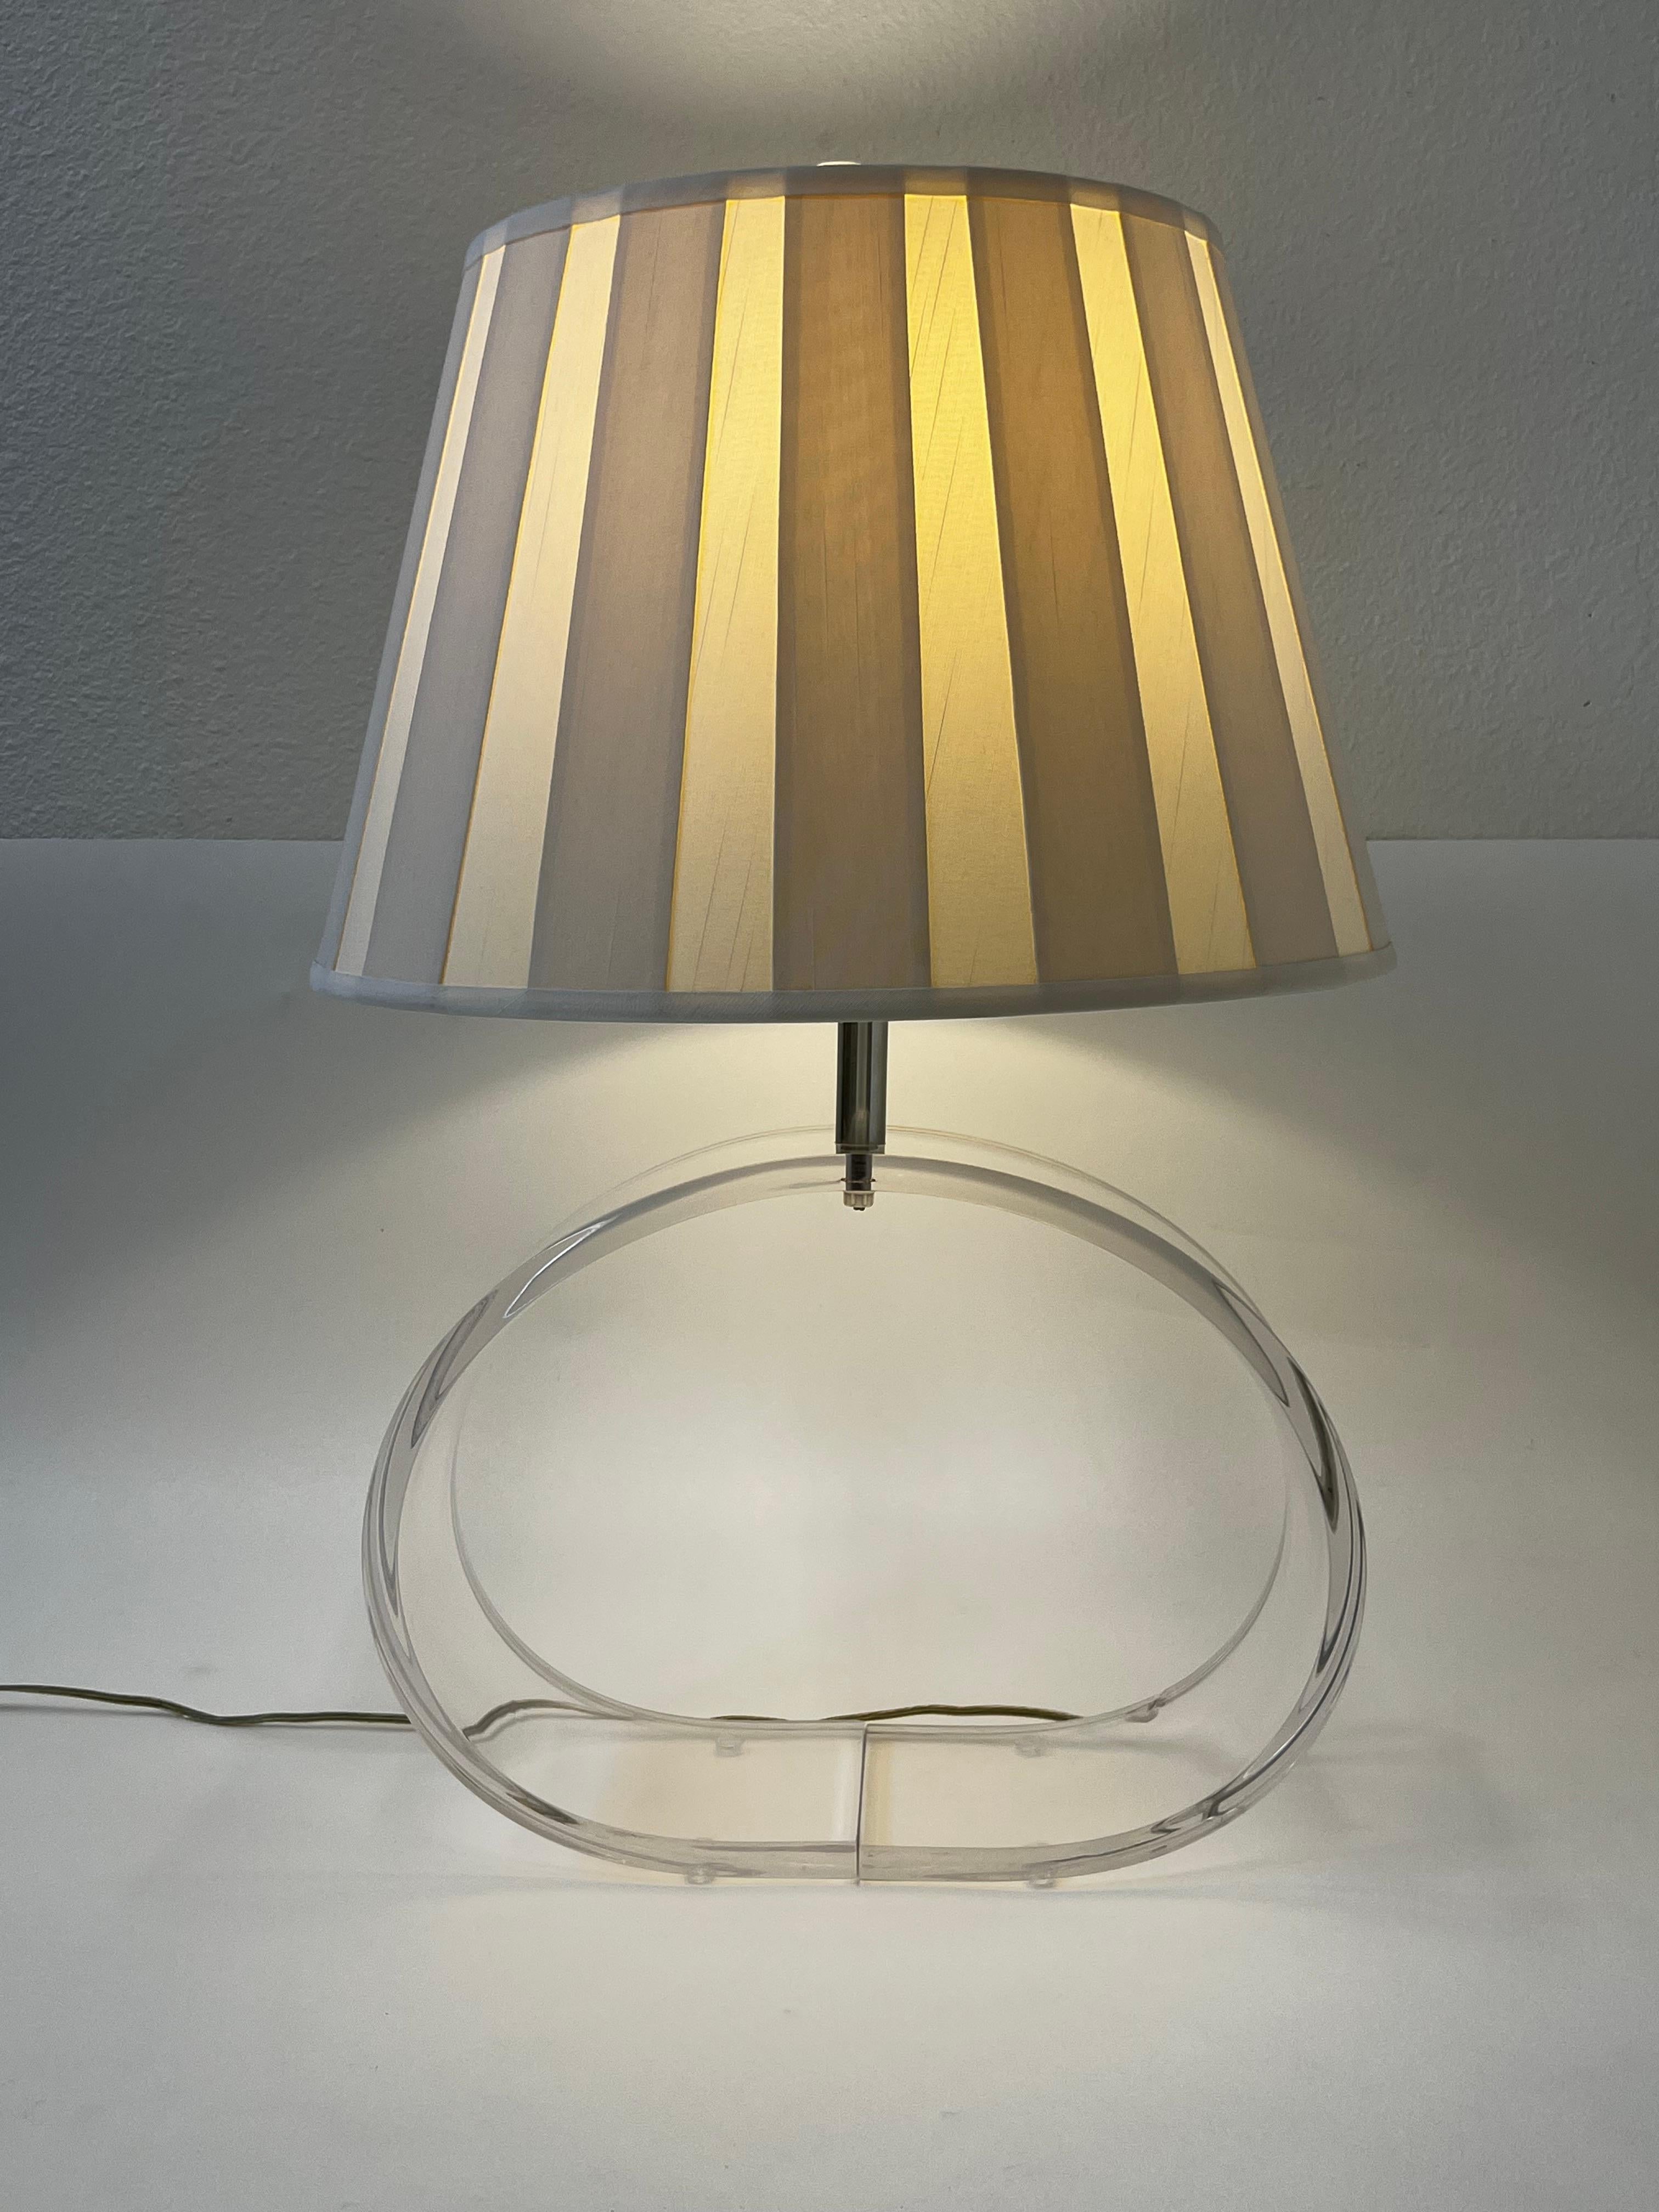 1970's  Lampe de table ovale en lucite claire et chrome avec abat-jour original en soie plissée designée par Ritts Co. 

En bon état d'origine. 
Il faut une ampoule Edison 100 max. 

Dimensions : 26,5